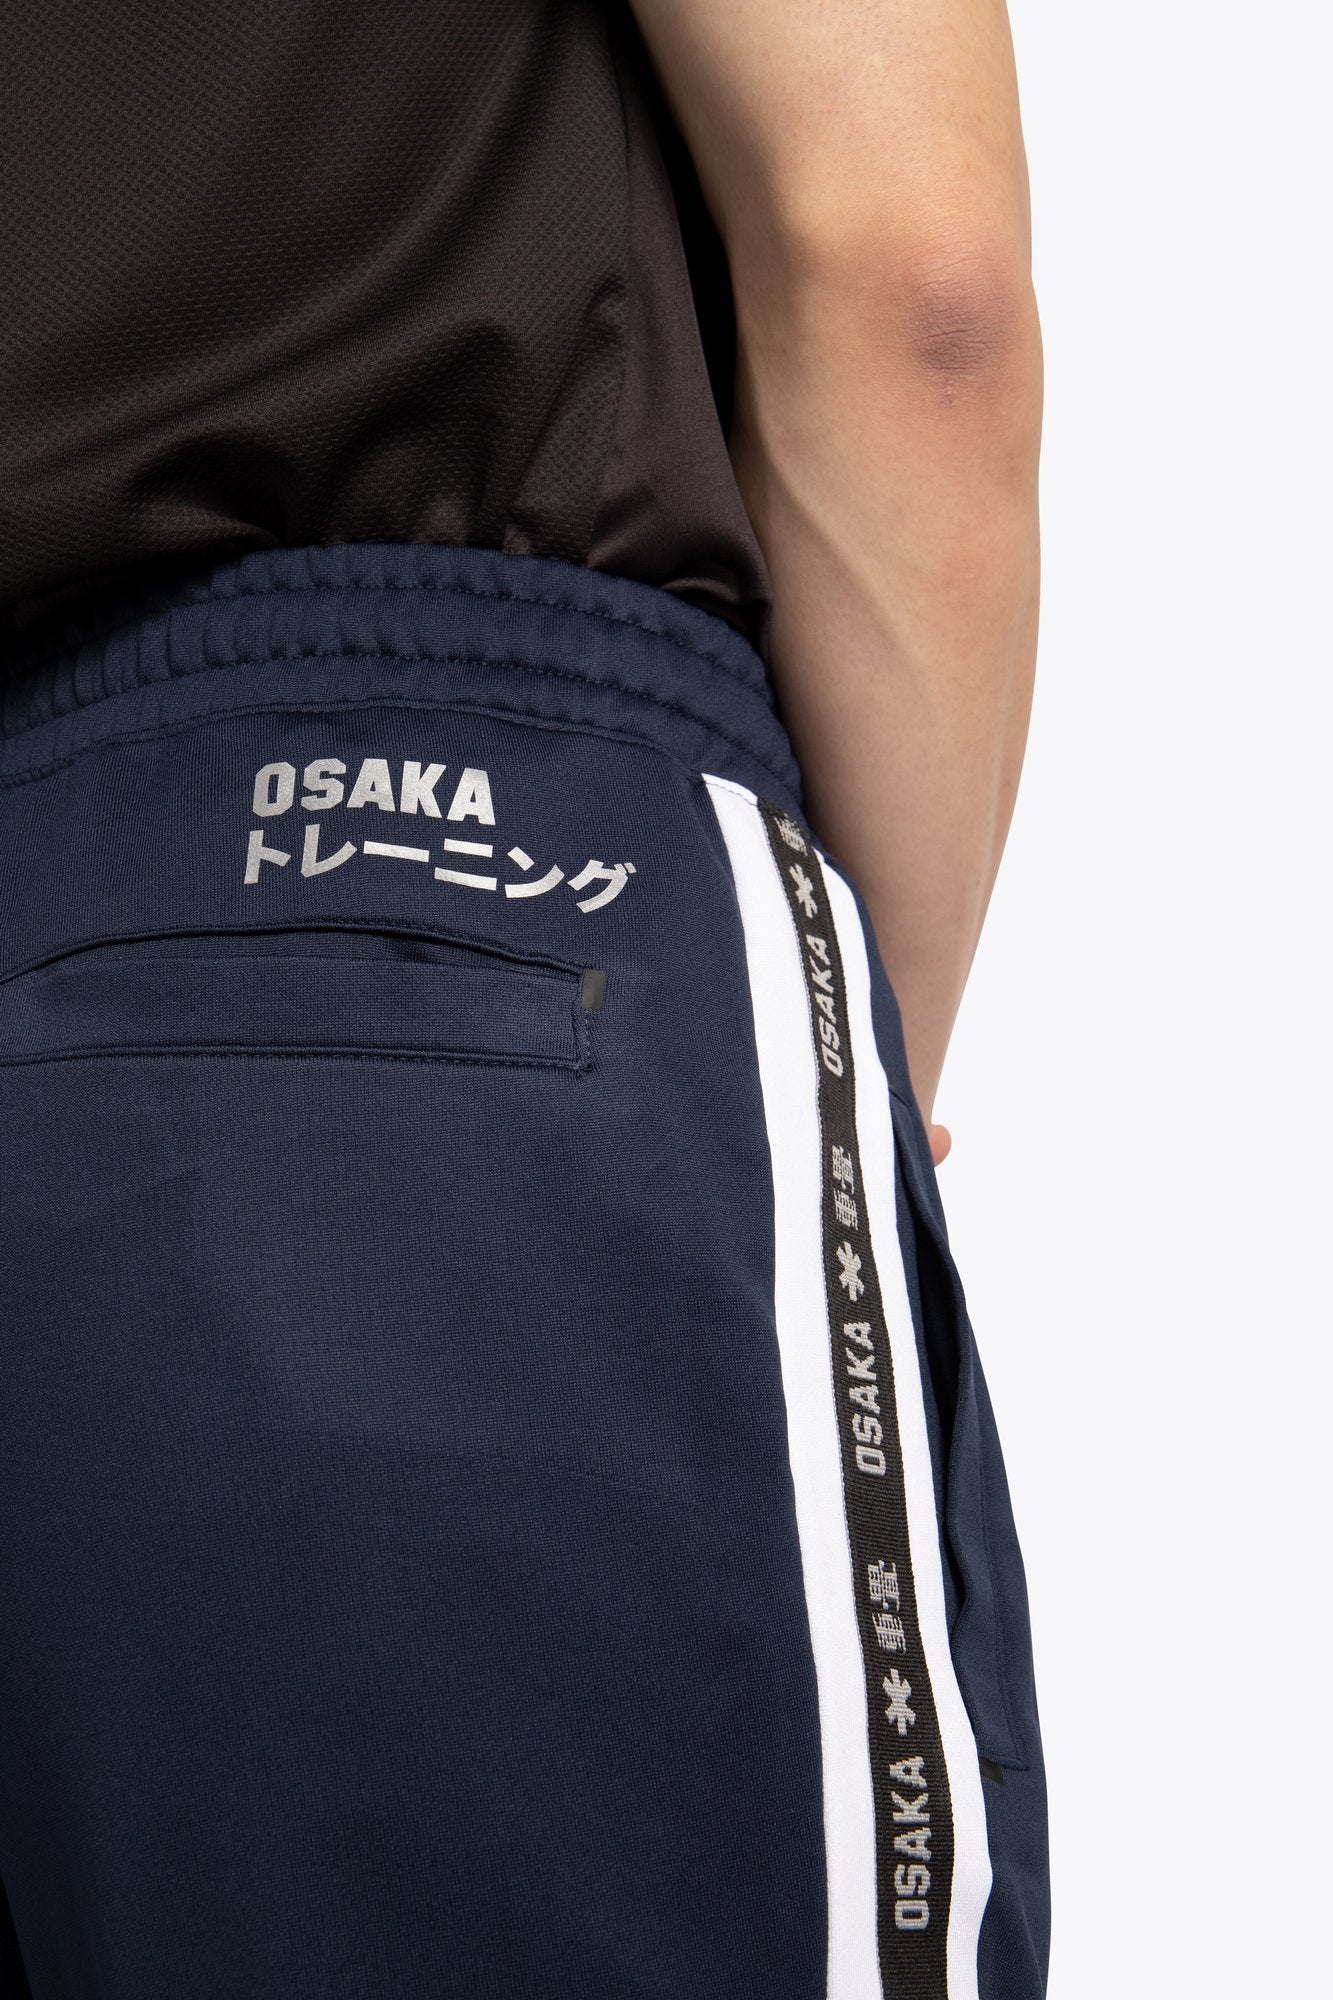 Osaka Training Sweatpants Men Navy